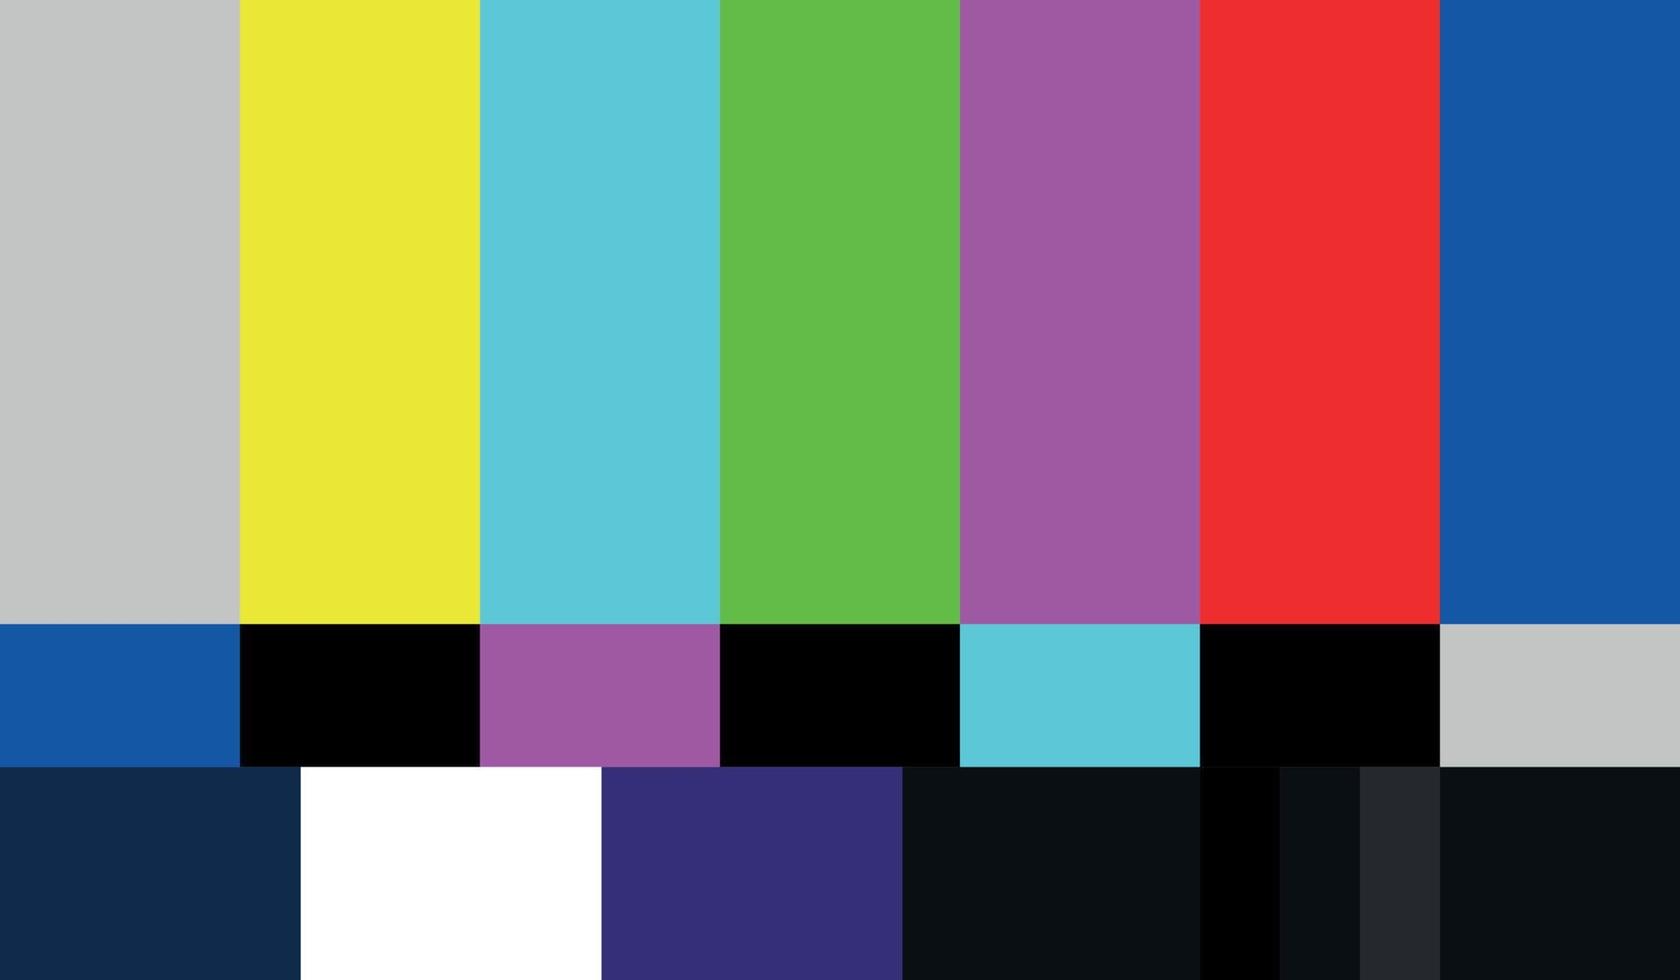 barra de color de pantalla ancha 16x9 smpte hdtv para señales de transmisión de video y televisión vector de fondo